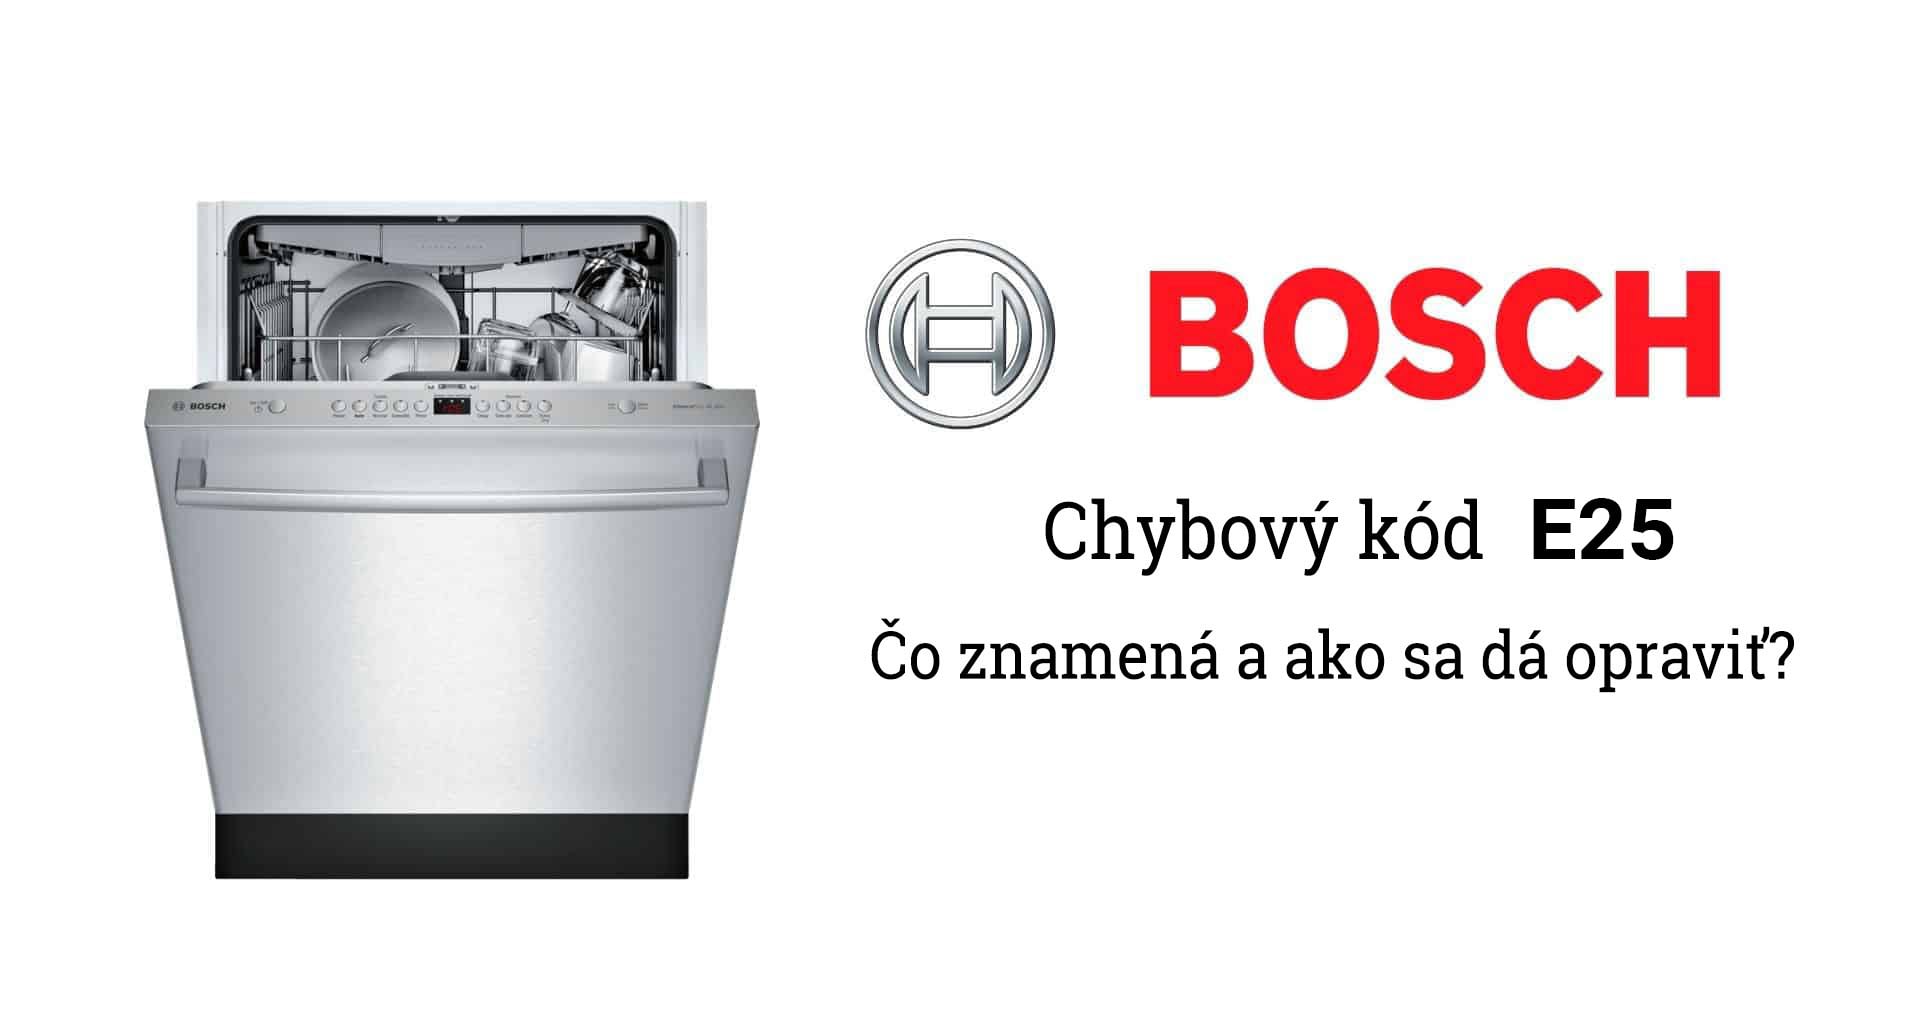 Poruchy umývačky Bosch - chybový kód E25